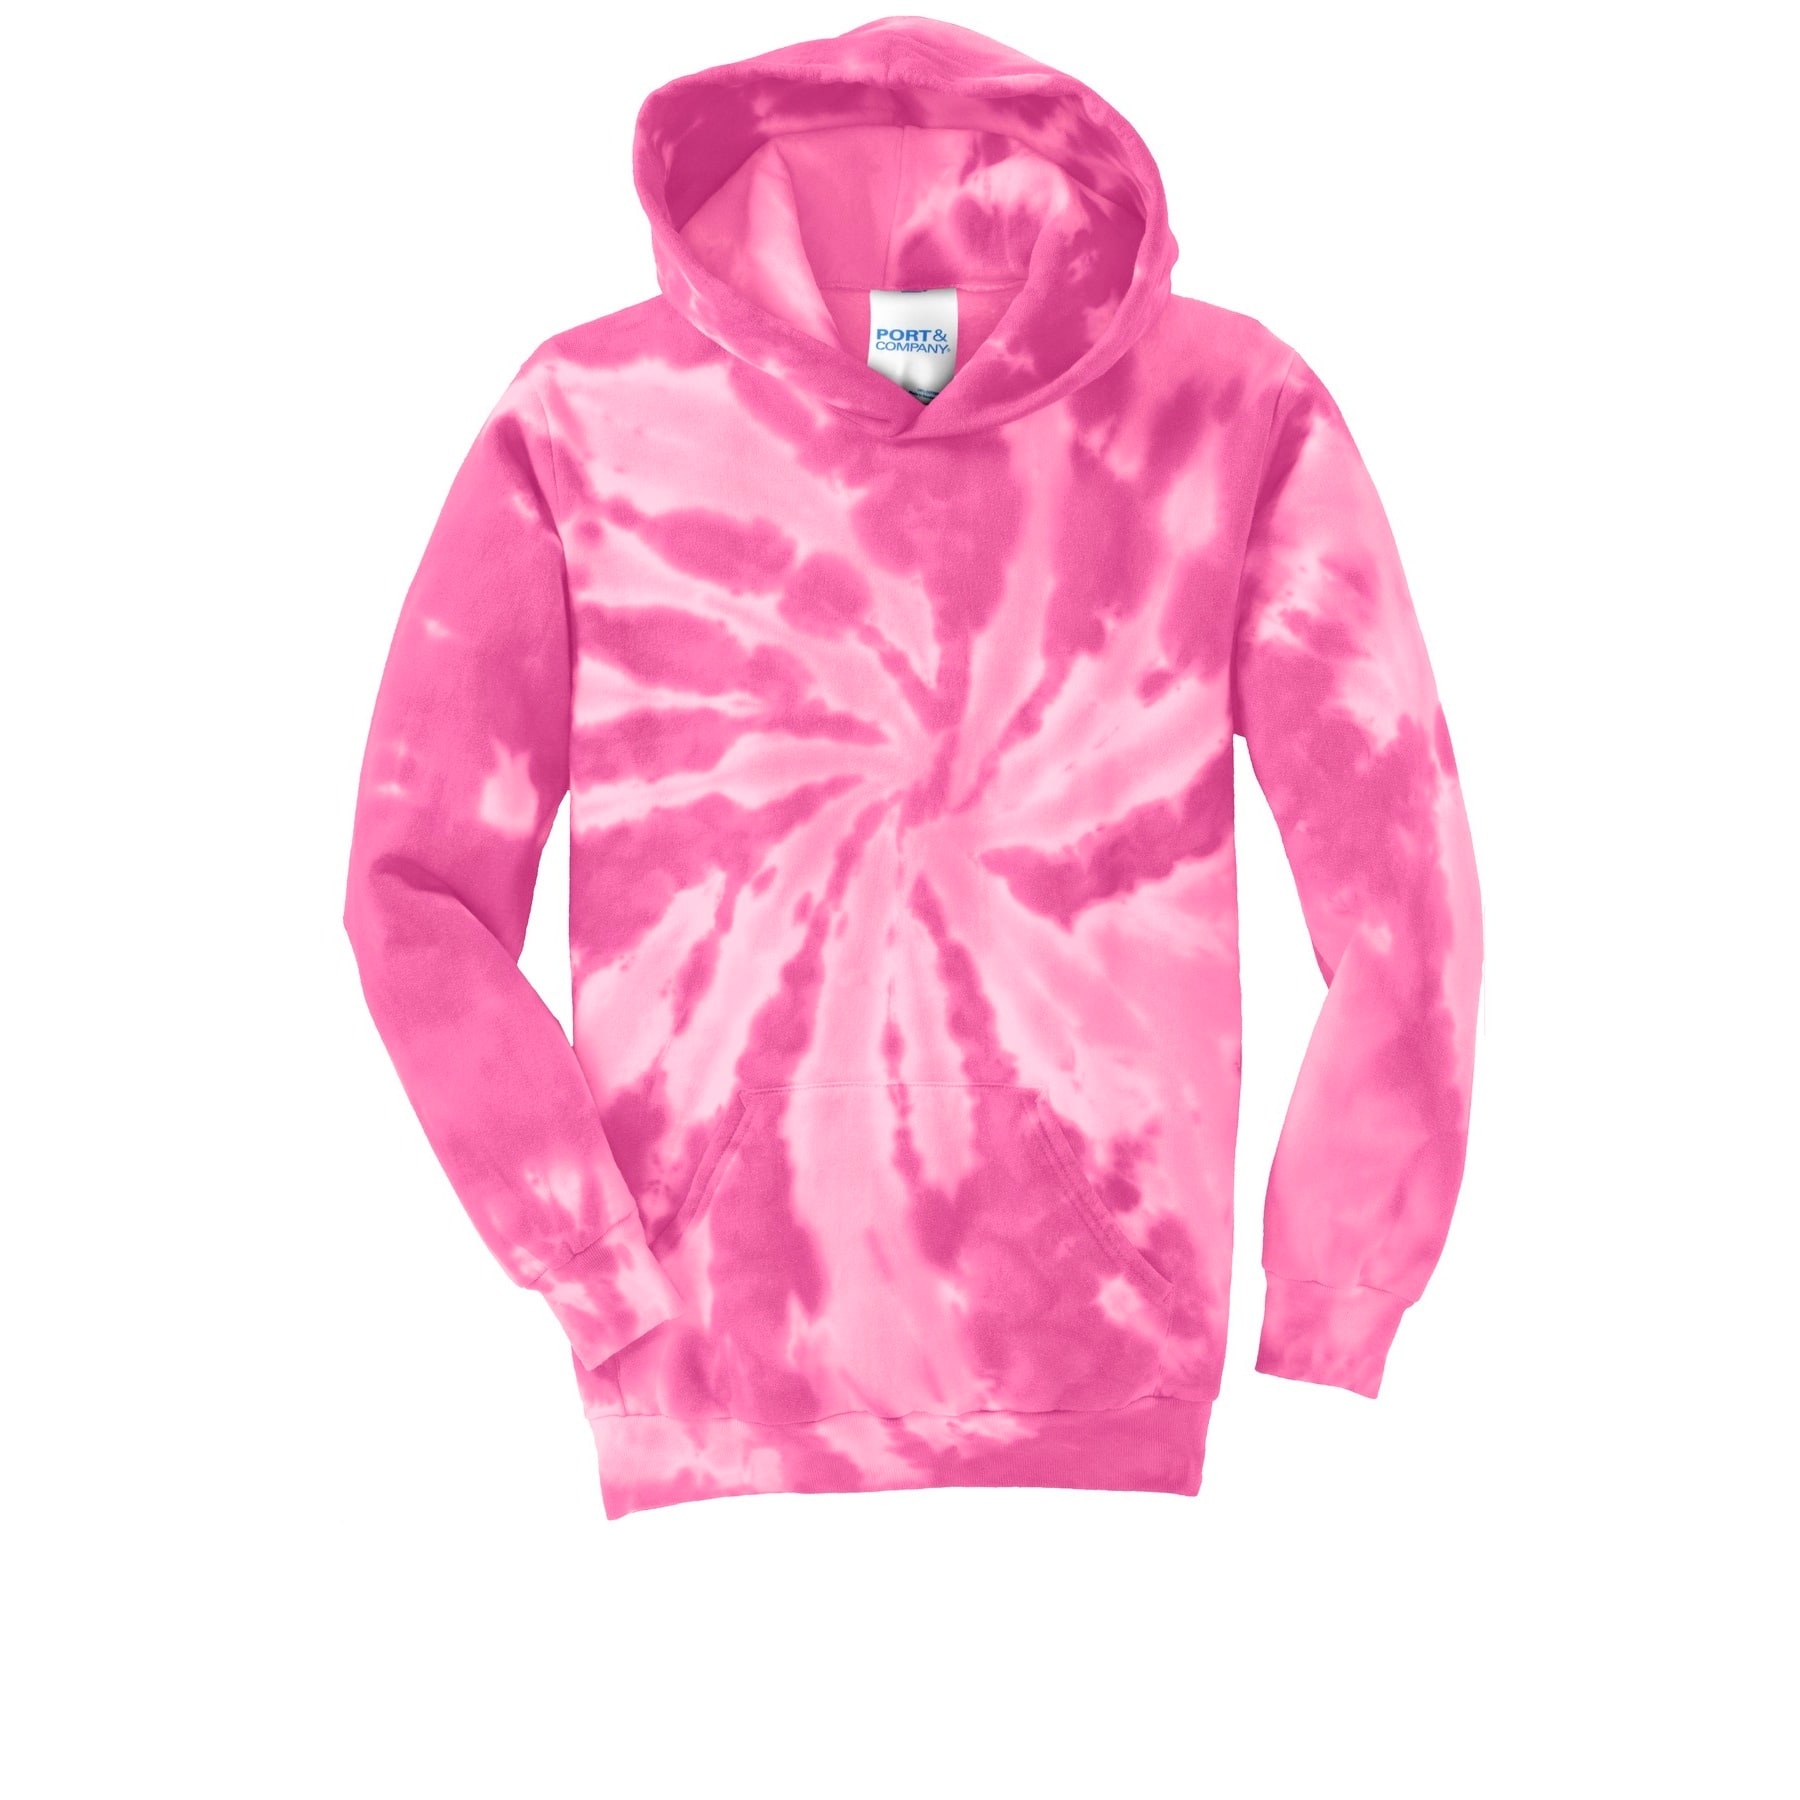 Port & Company Men's Hooded Sweatshirt Neon Pink